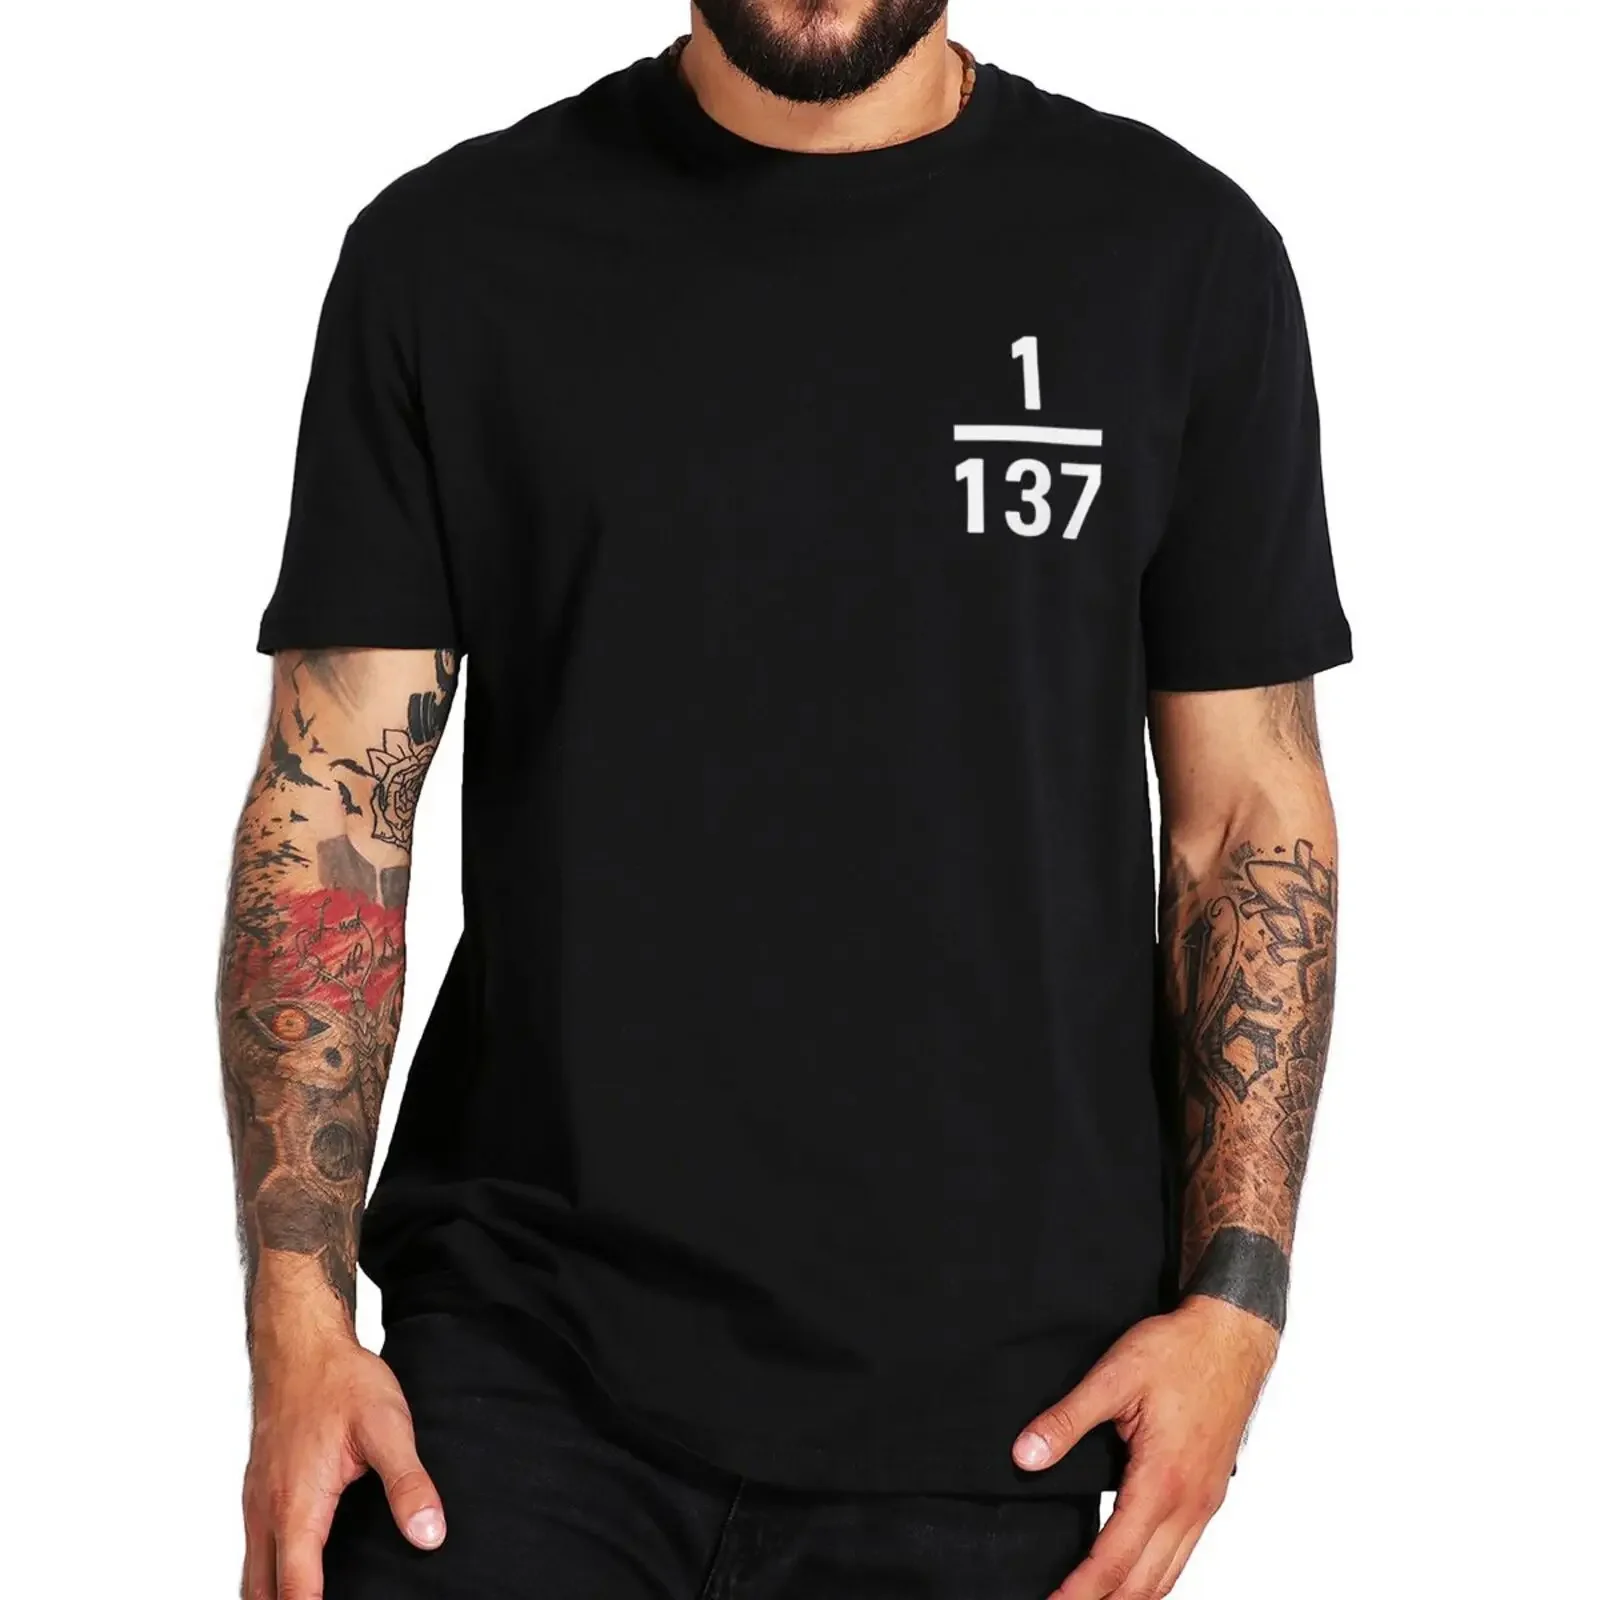 

Feintuktur-Konstante 1/137 футболка для любителей математики физики Geek подарок топы 100% хлопок унисекс Летние повседневные футболки